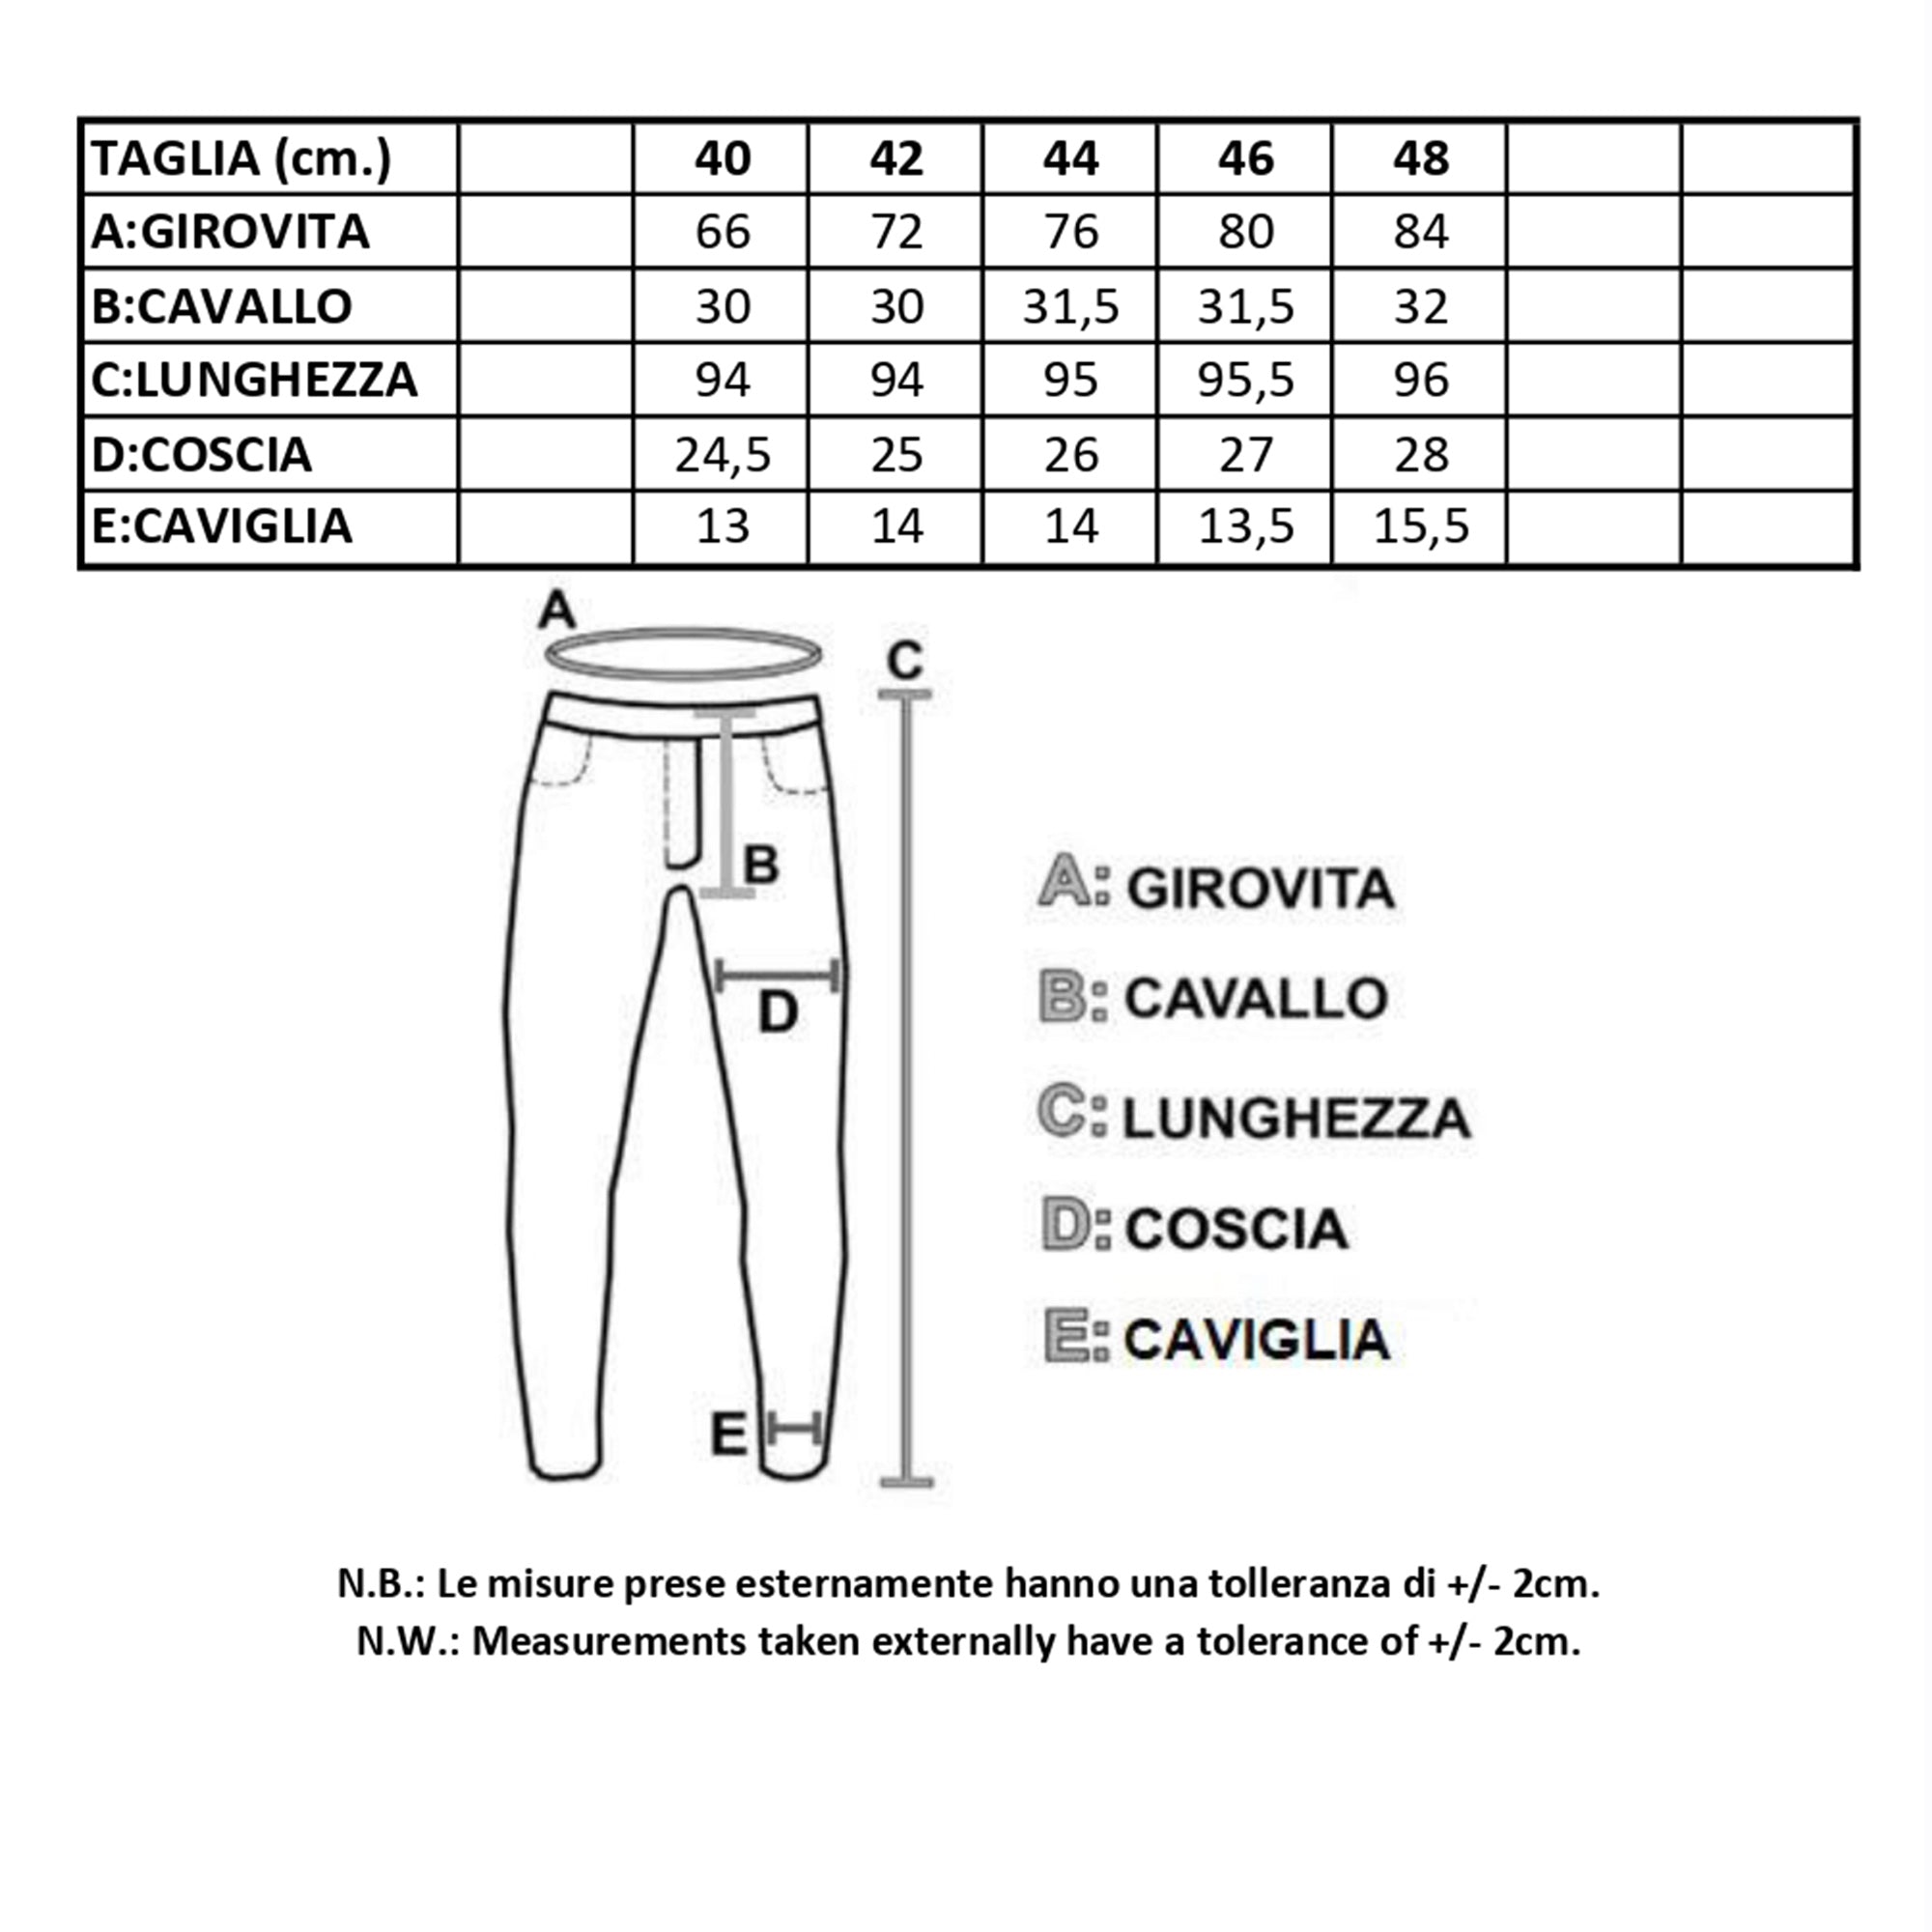 Pantalone donna elegante vita alta stretto slim fit made in italy 1476